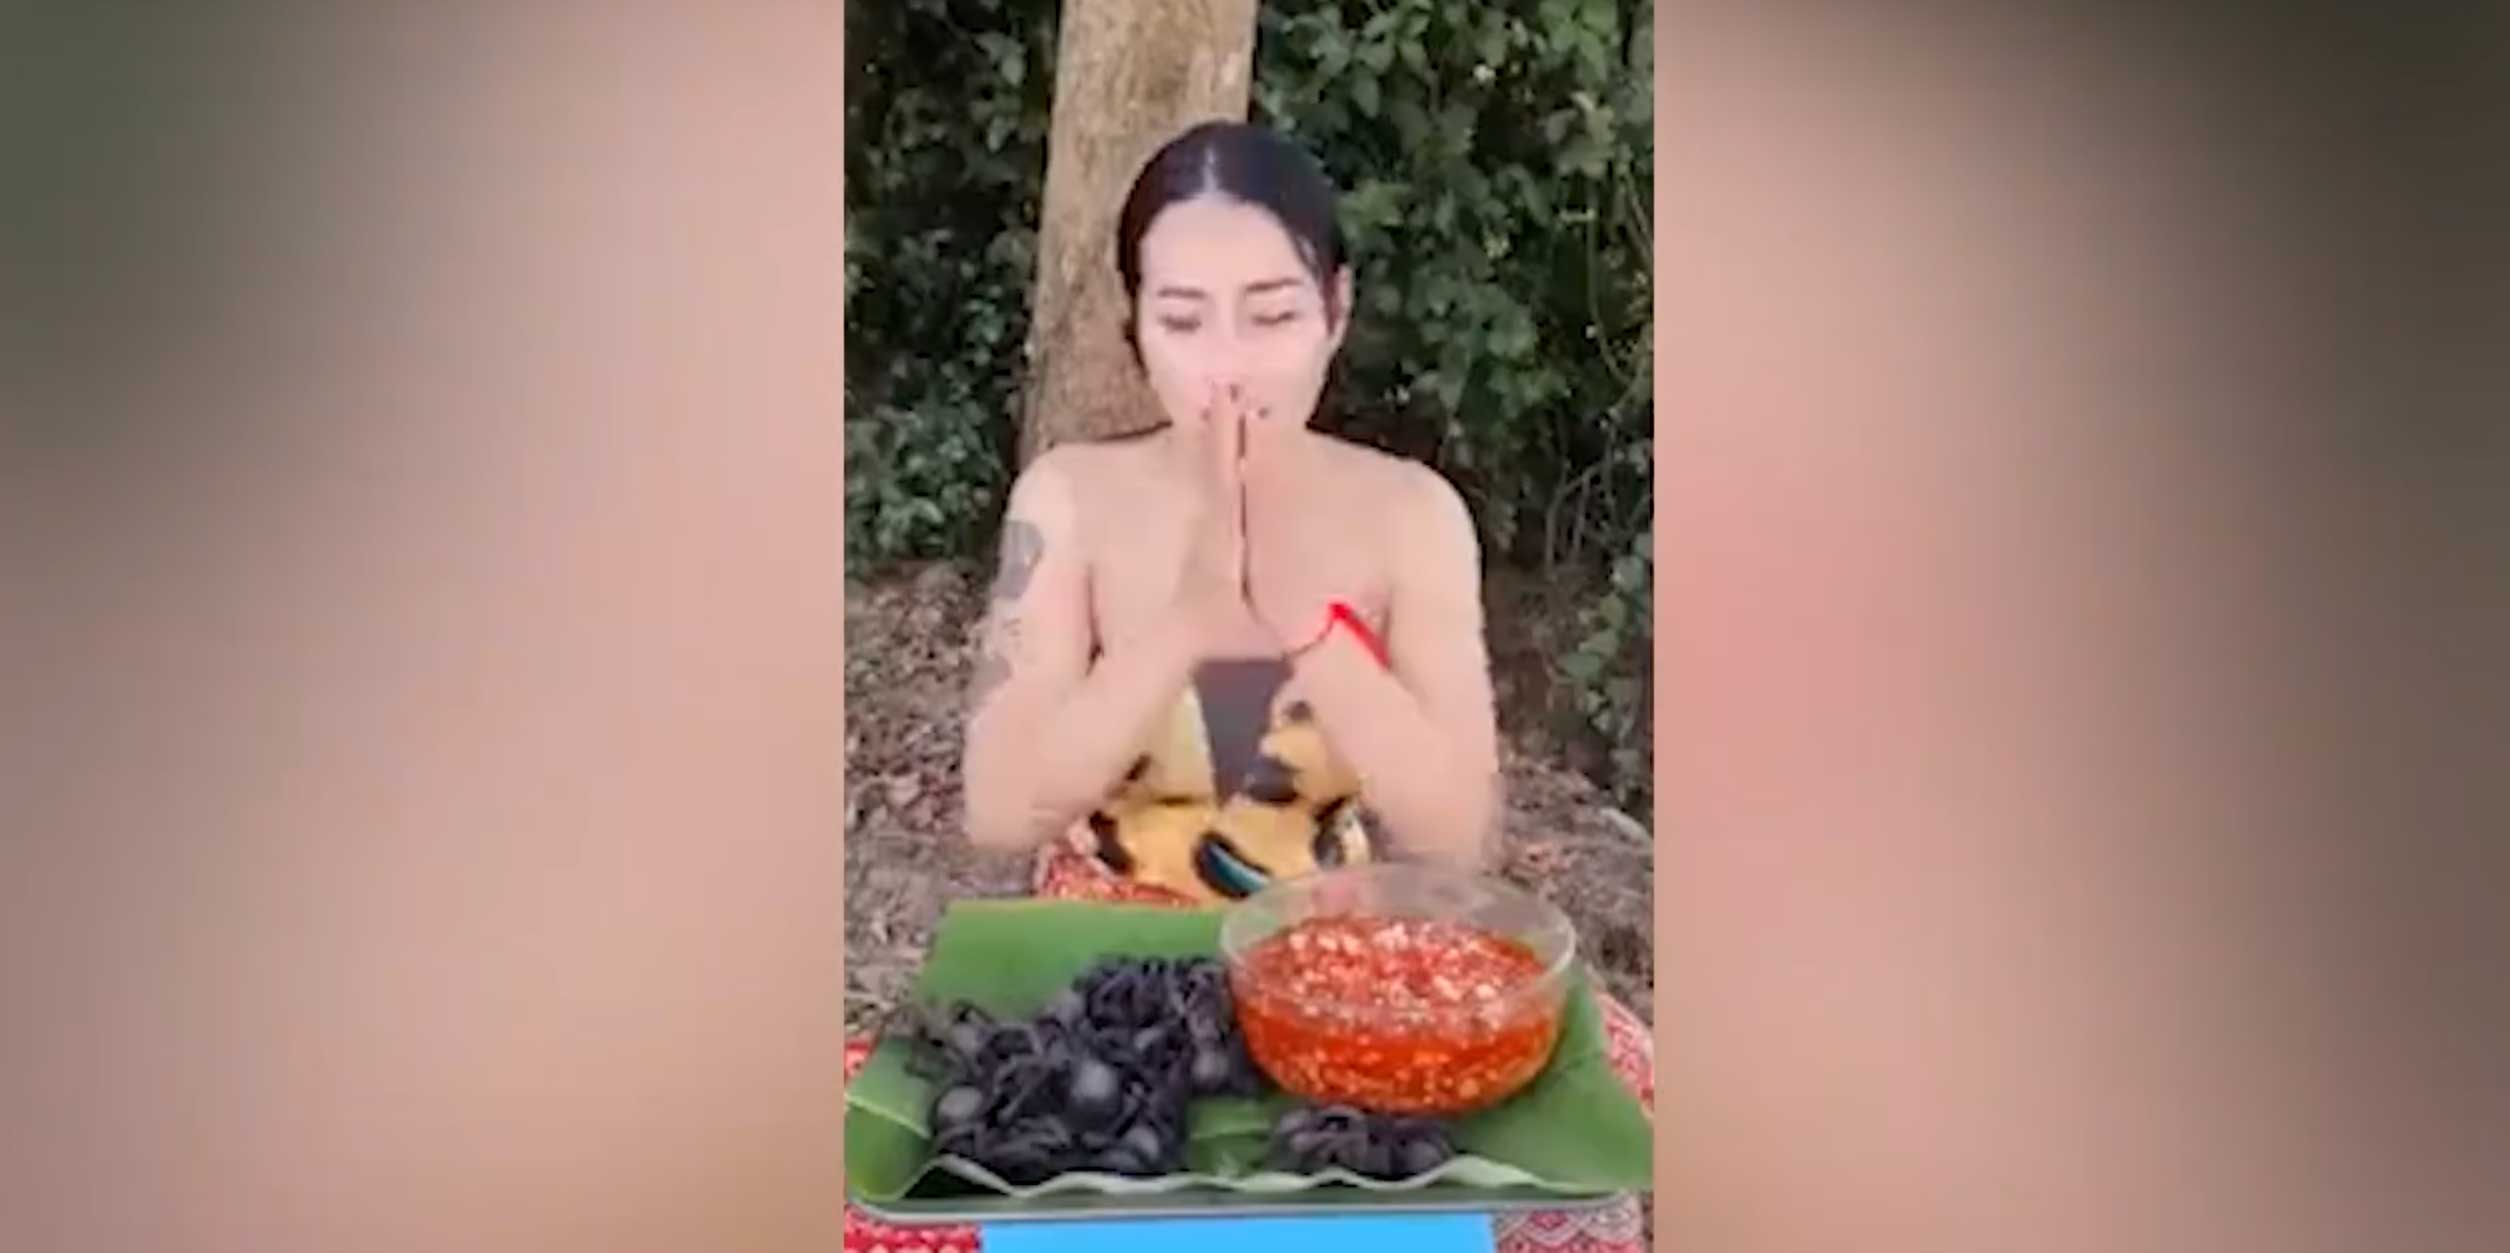 Örümcek yiyen kadın videosu olay oldu!